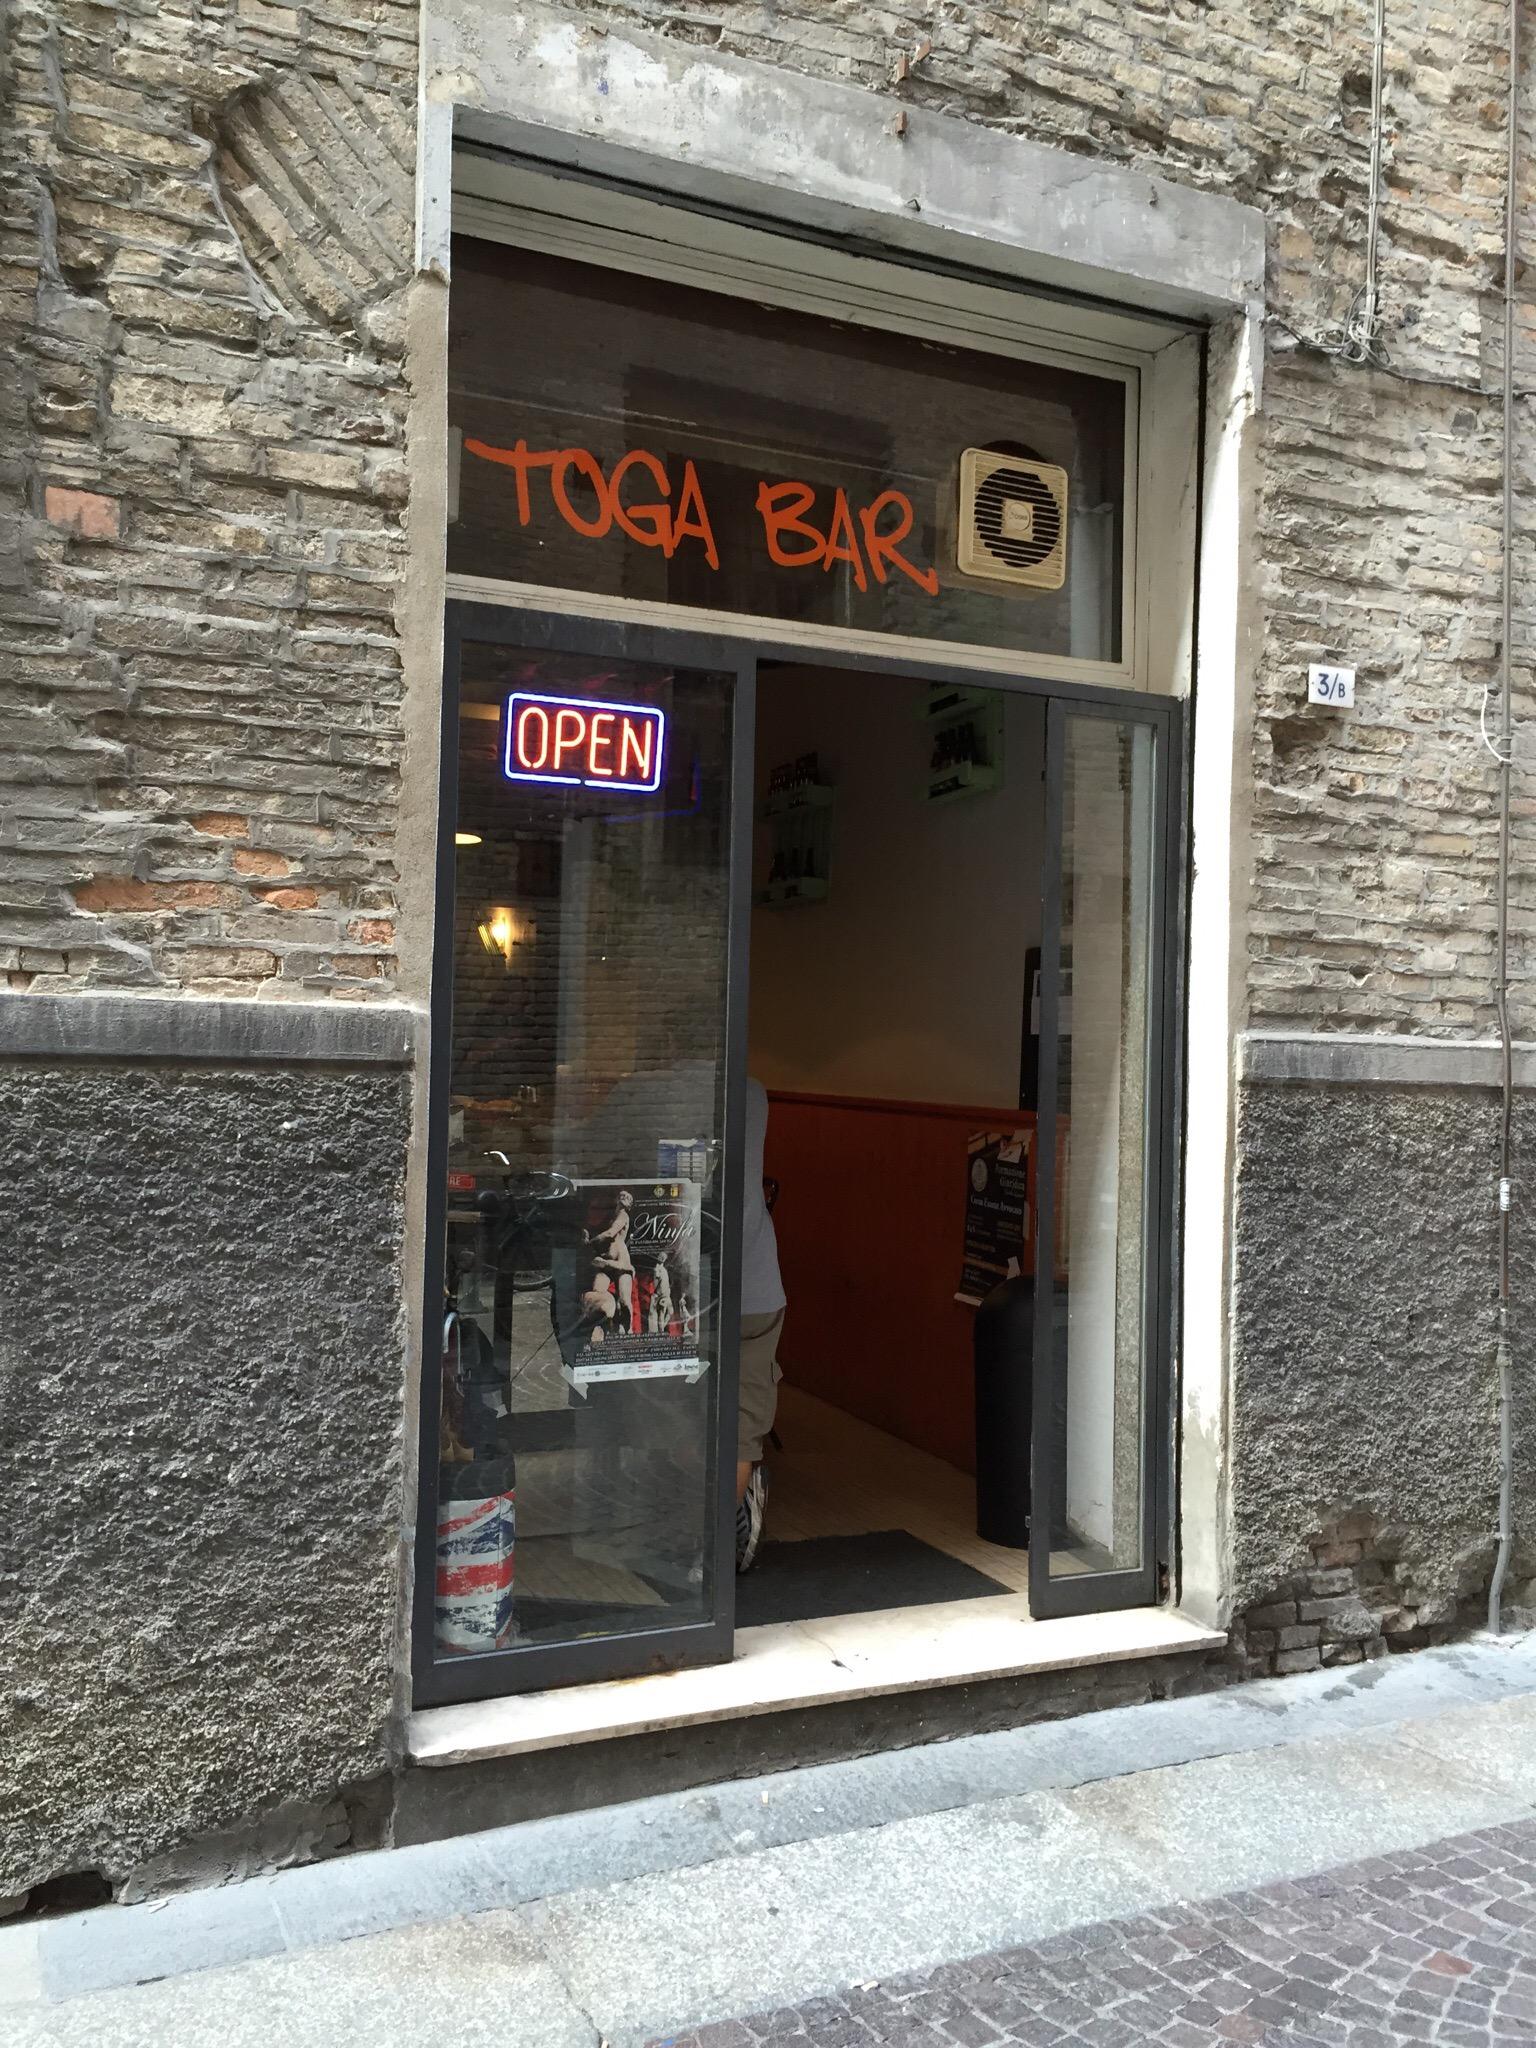 Toga Bar